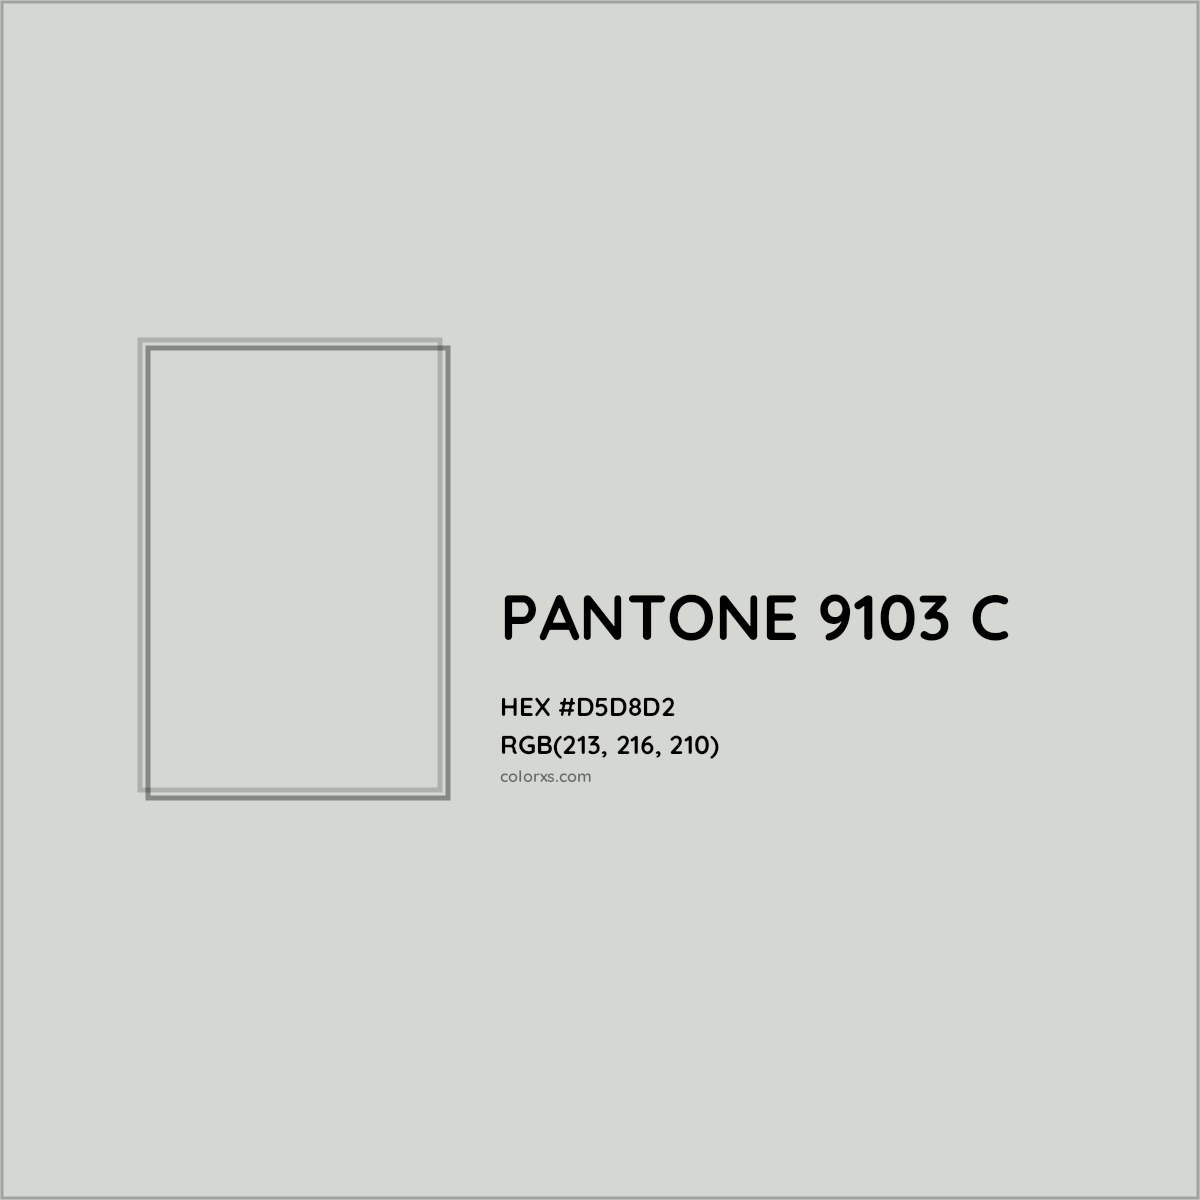 HEX #D5D8D2 PANTONE 9103 C CMS Pantone PMS - Color Code